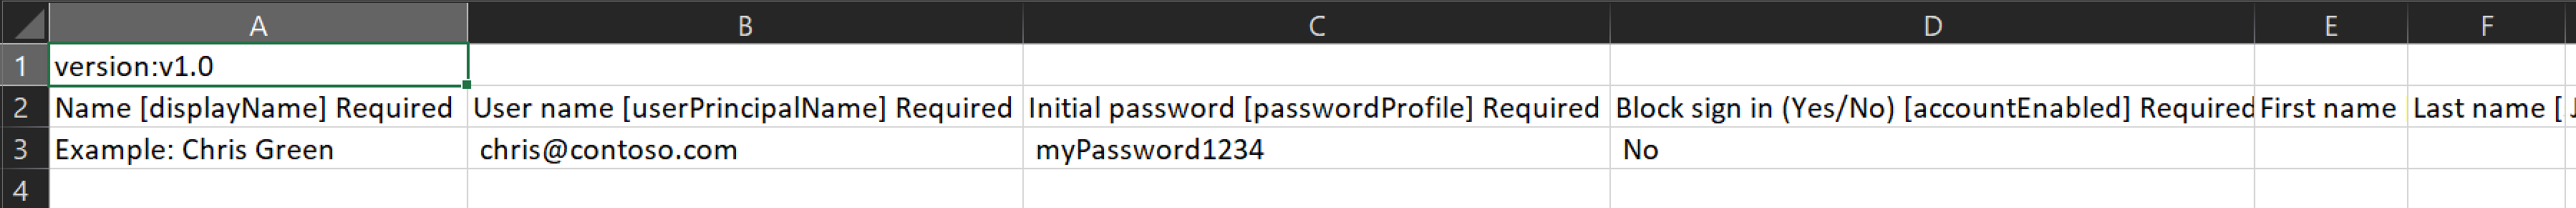 Capture d’écran montrant un exemple de fichier CSV contenant les noms et ID des utilisateurs à créer.